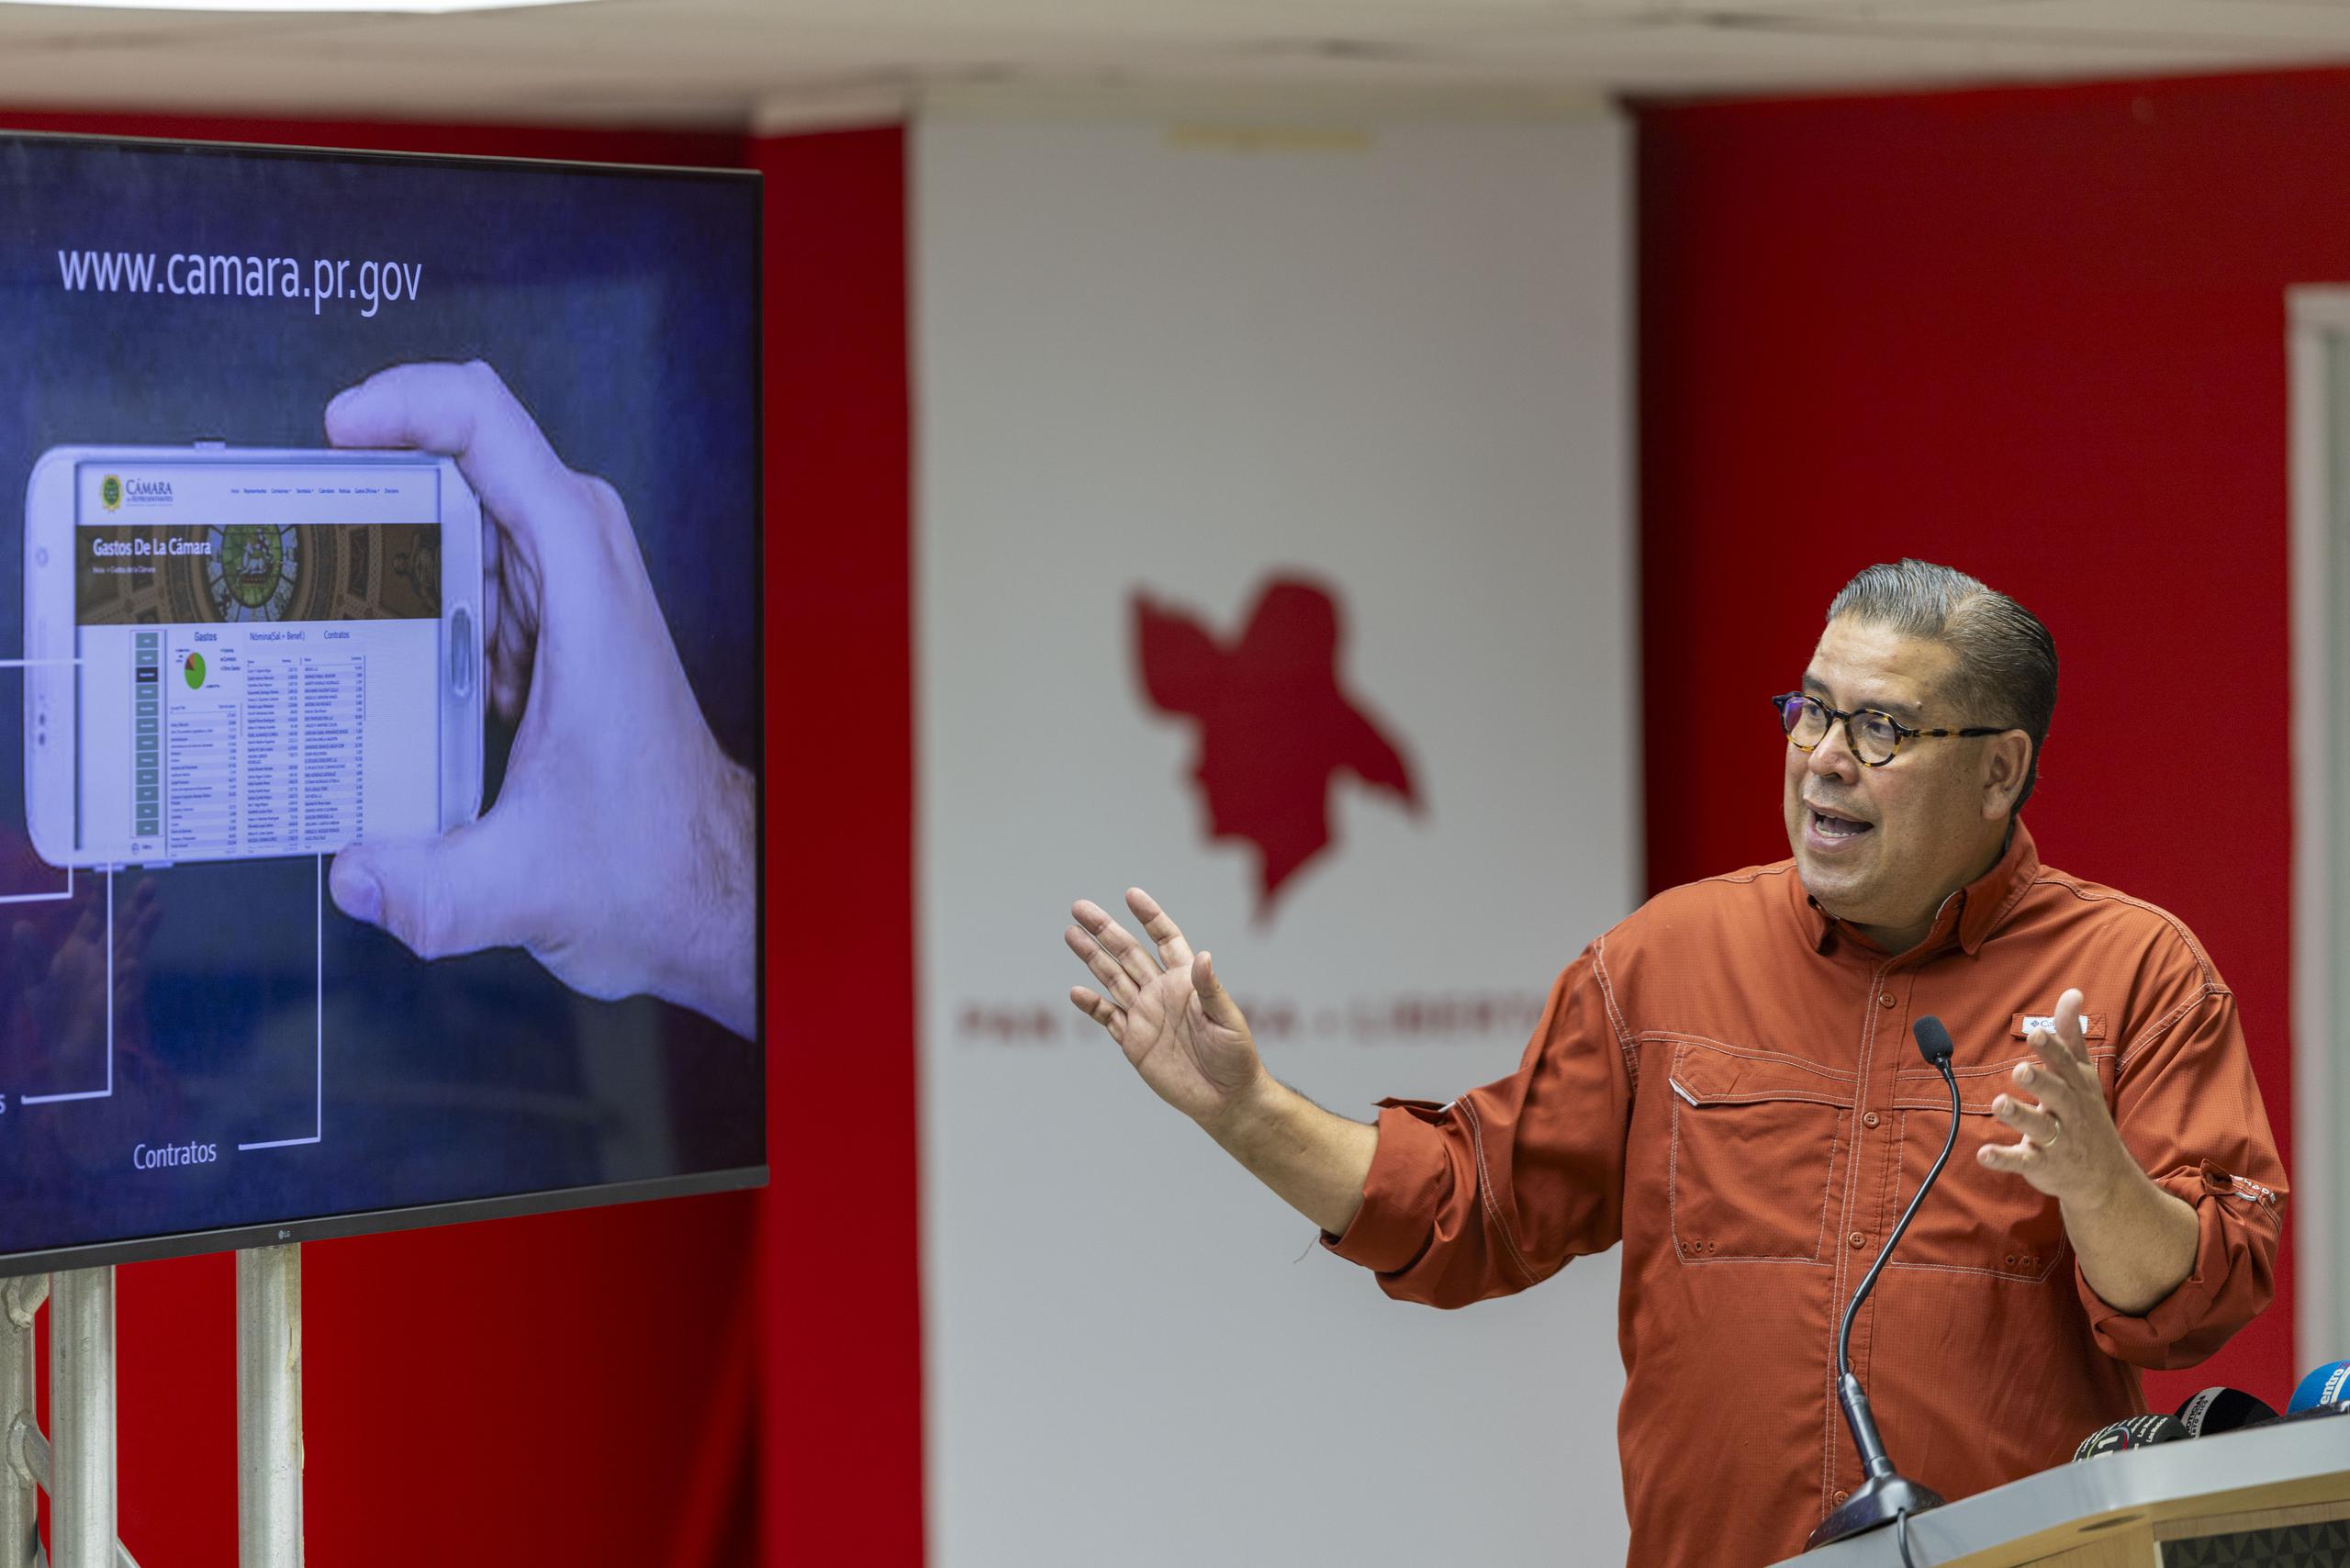 El presidente de la Cámara de Representantes y aspirante a la alcaldía de Dorado, Rafael “Tatito” Hernández, prometió que no habría ningún despido si prevalece como alcalde en las próximas elecciones.